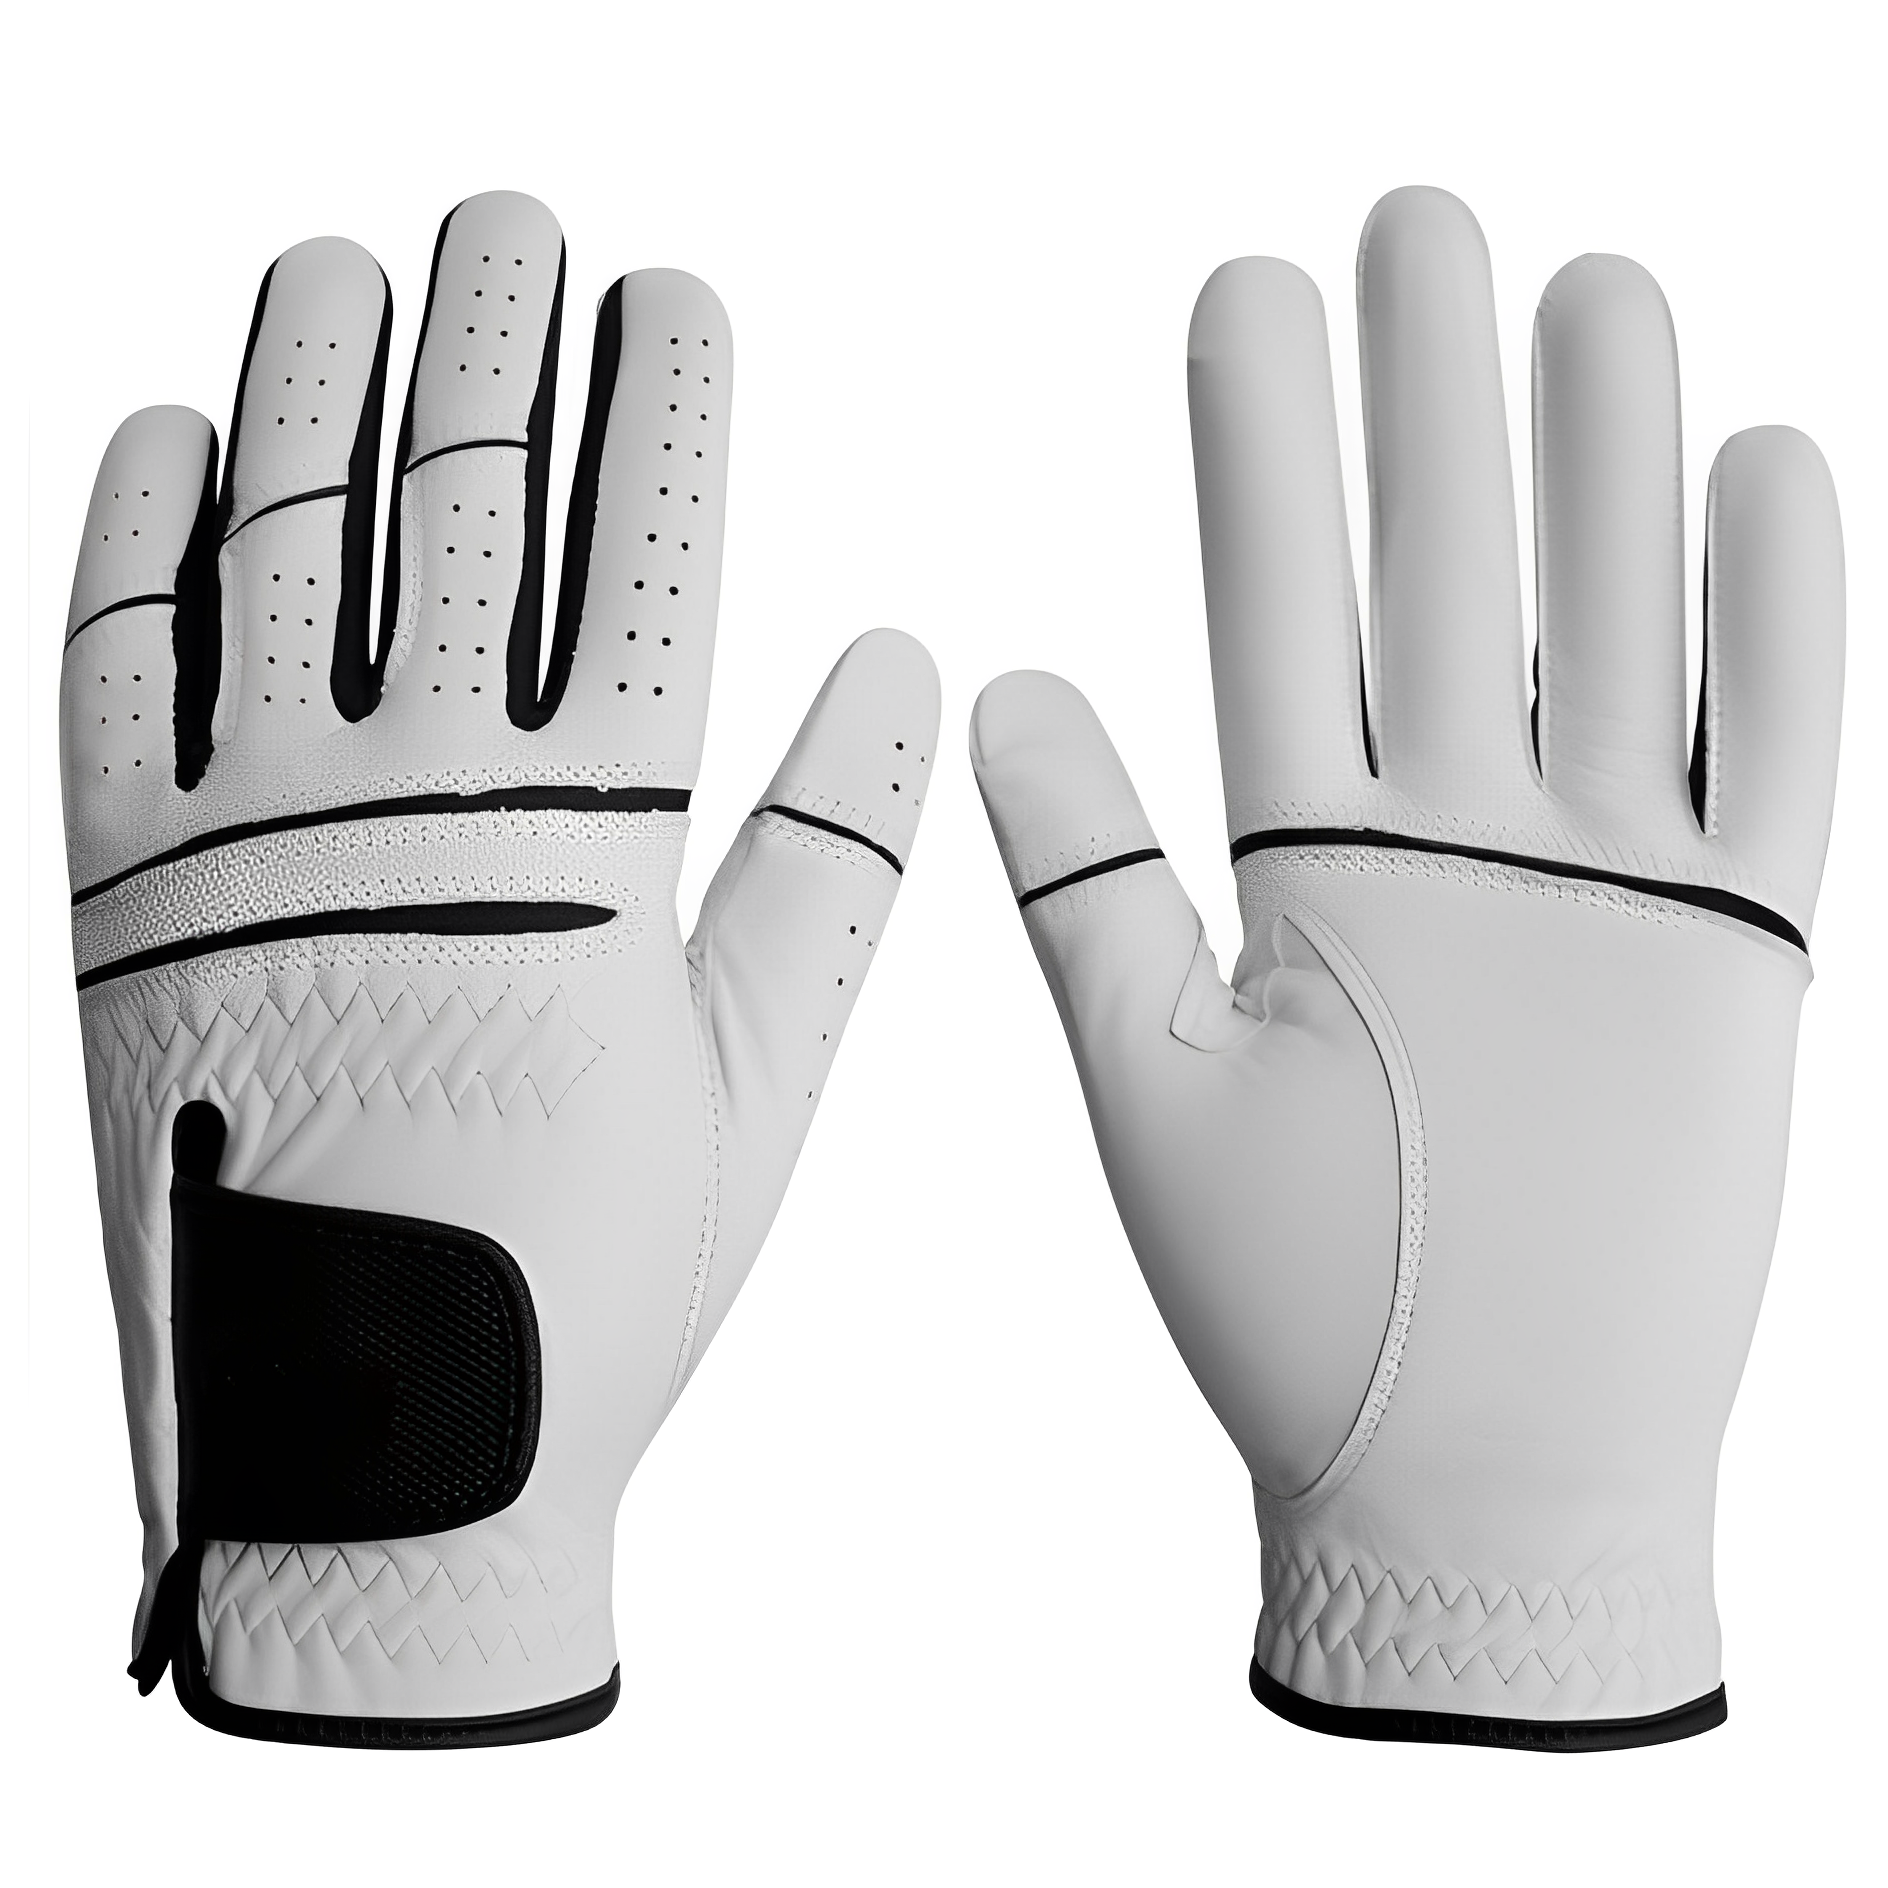 Men's WeatherSof Golf Glove White Medium/Large, Worn on Left Hand-1986 GOLF